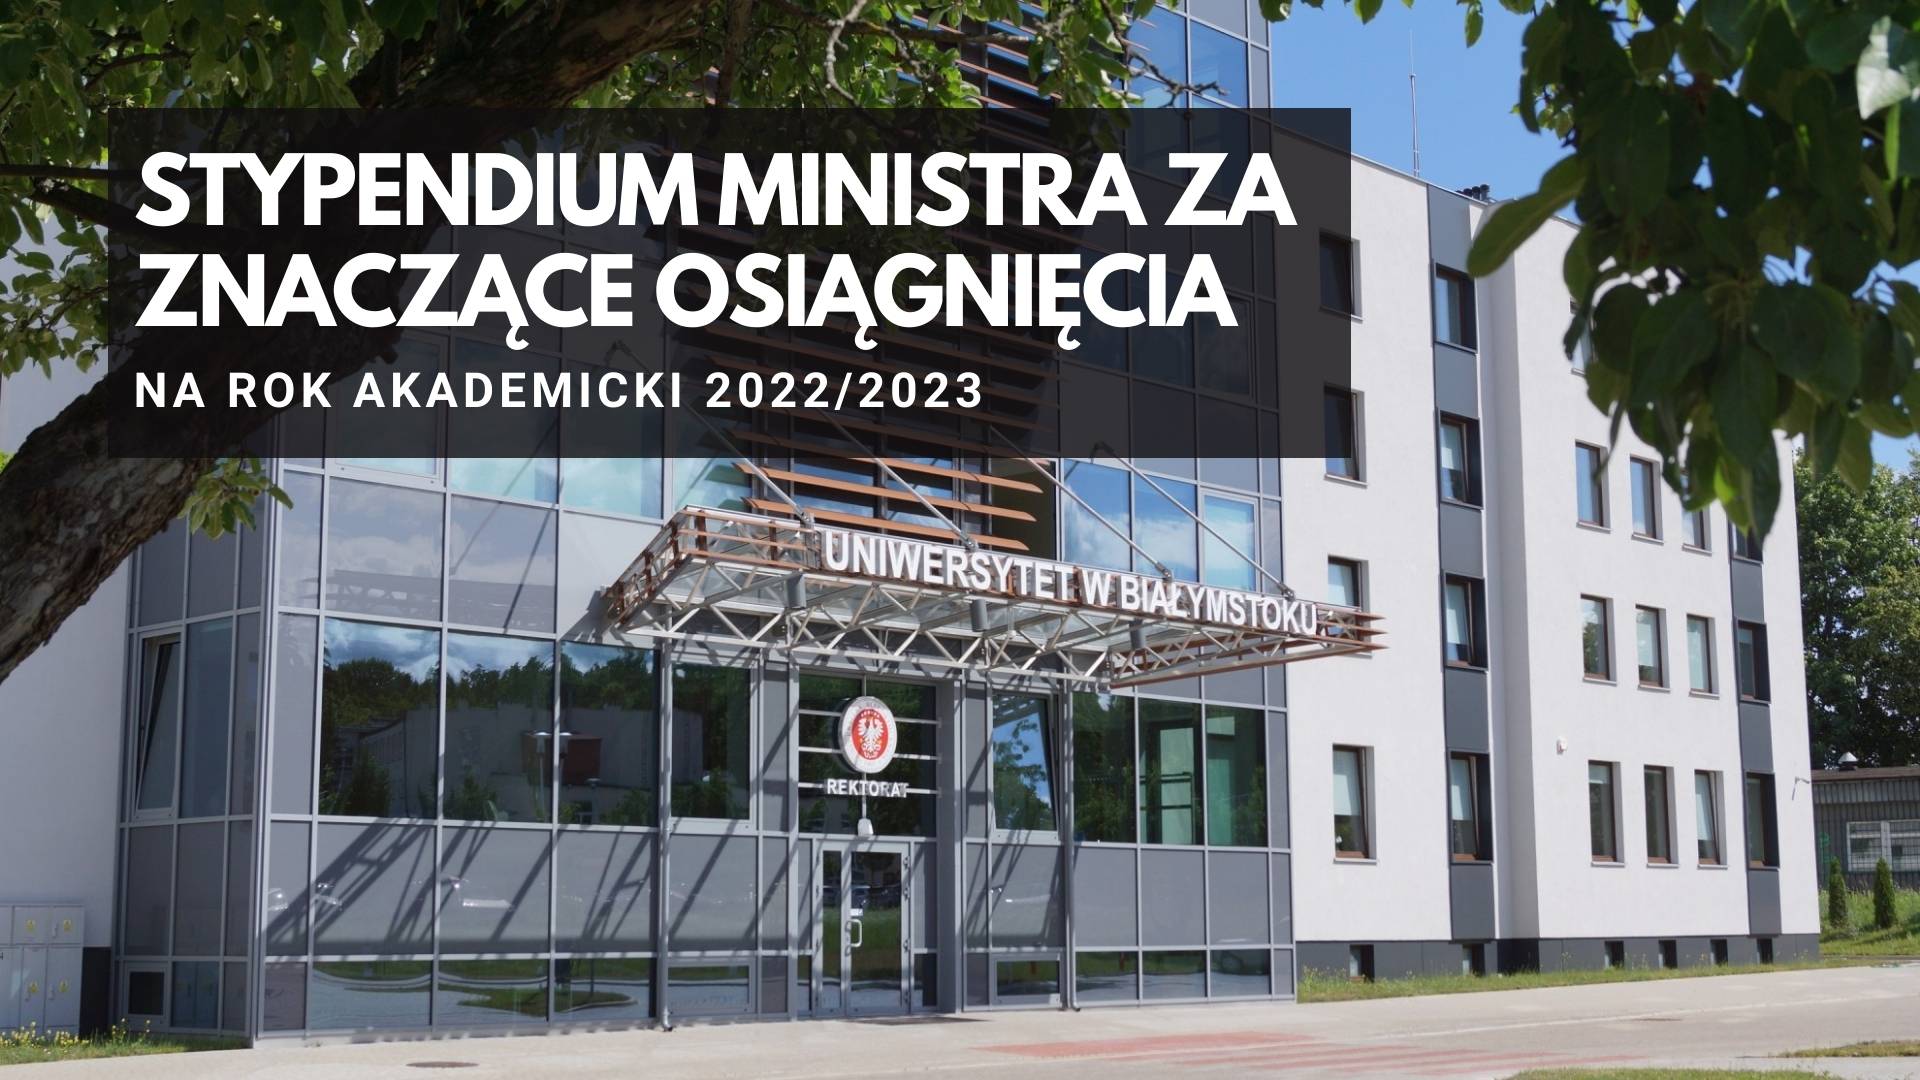 Grafika ozdobna z napisem: STYPENDIUM MINISTRA ZA ZNACZĄCE OSIĄGNIĘCIA  na rok akademicki 2022/2023